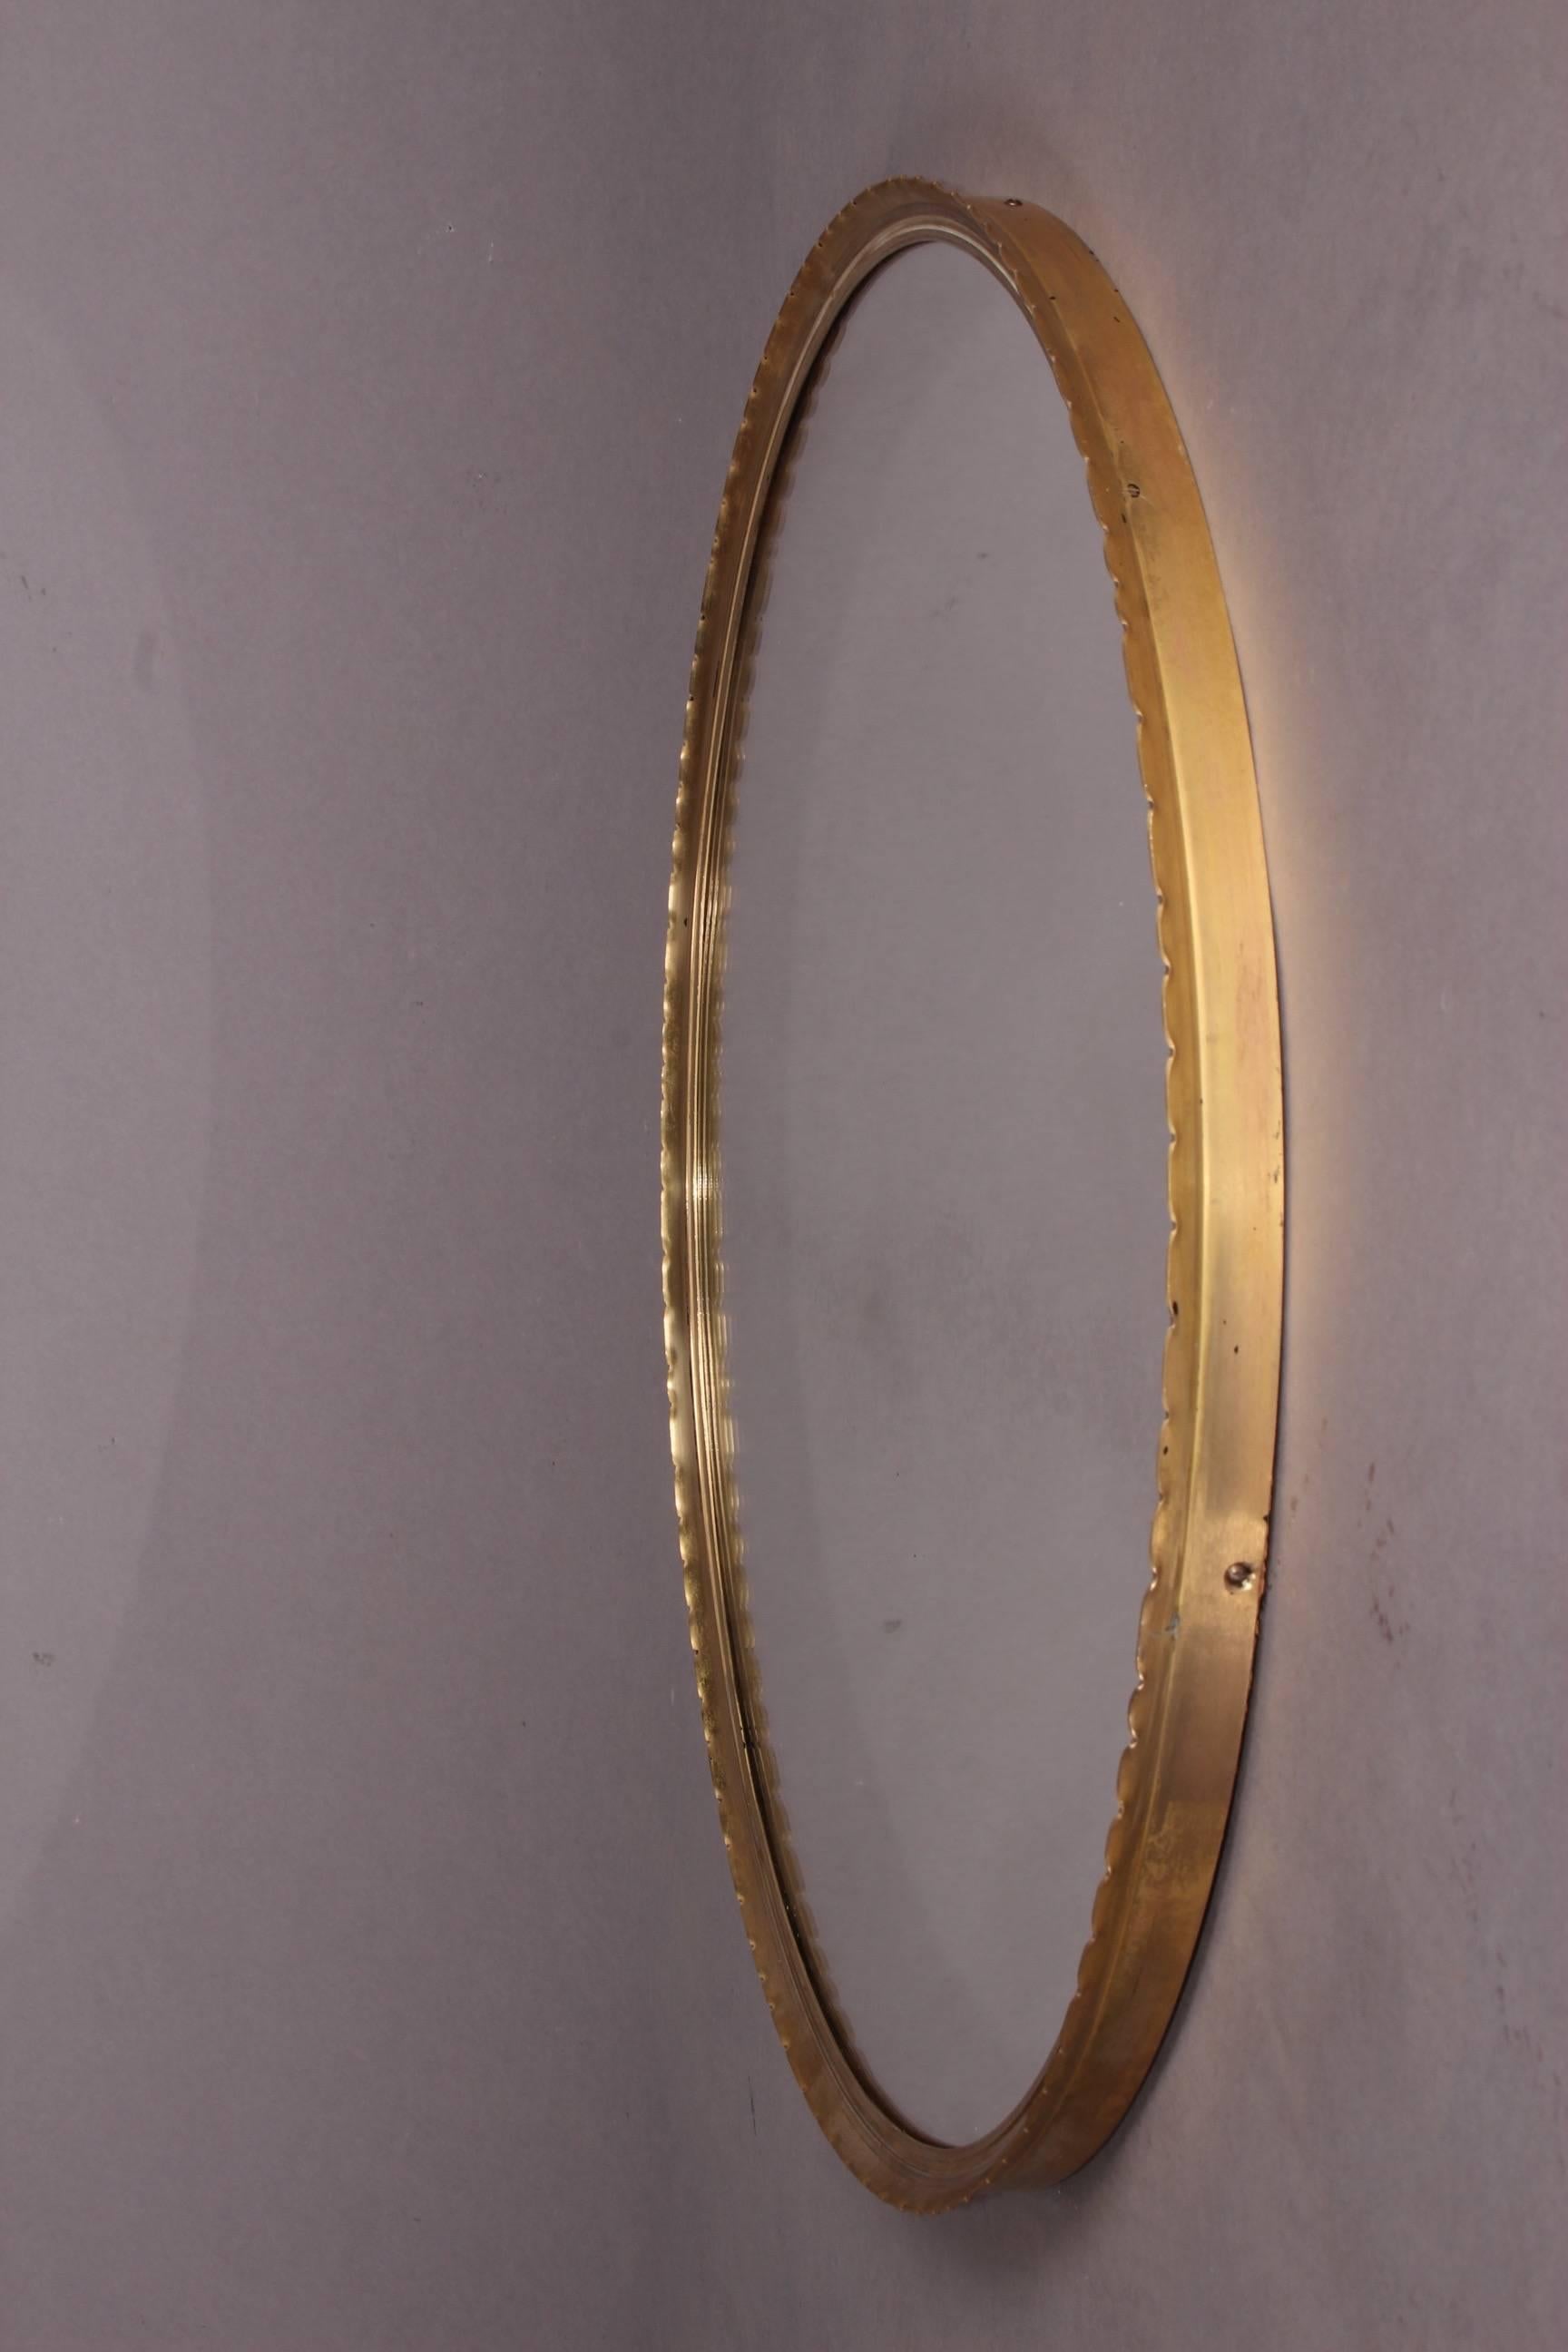 Round brass Josef Frank style mirror.